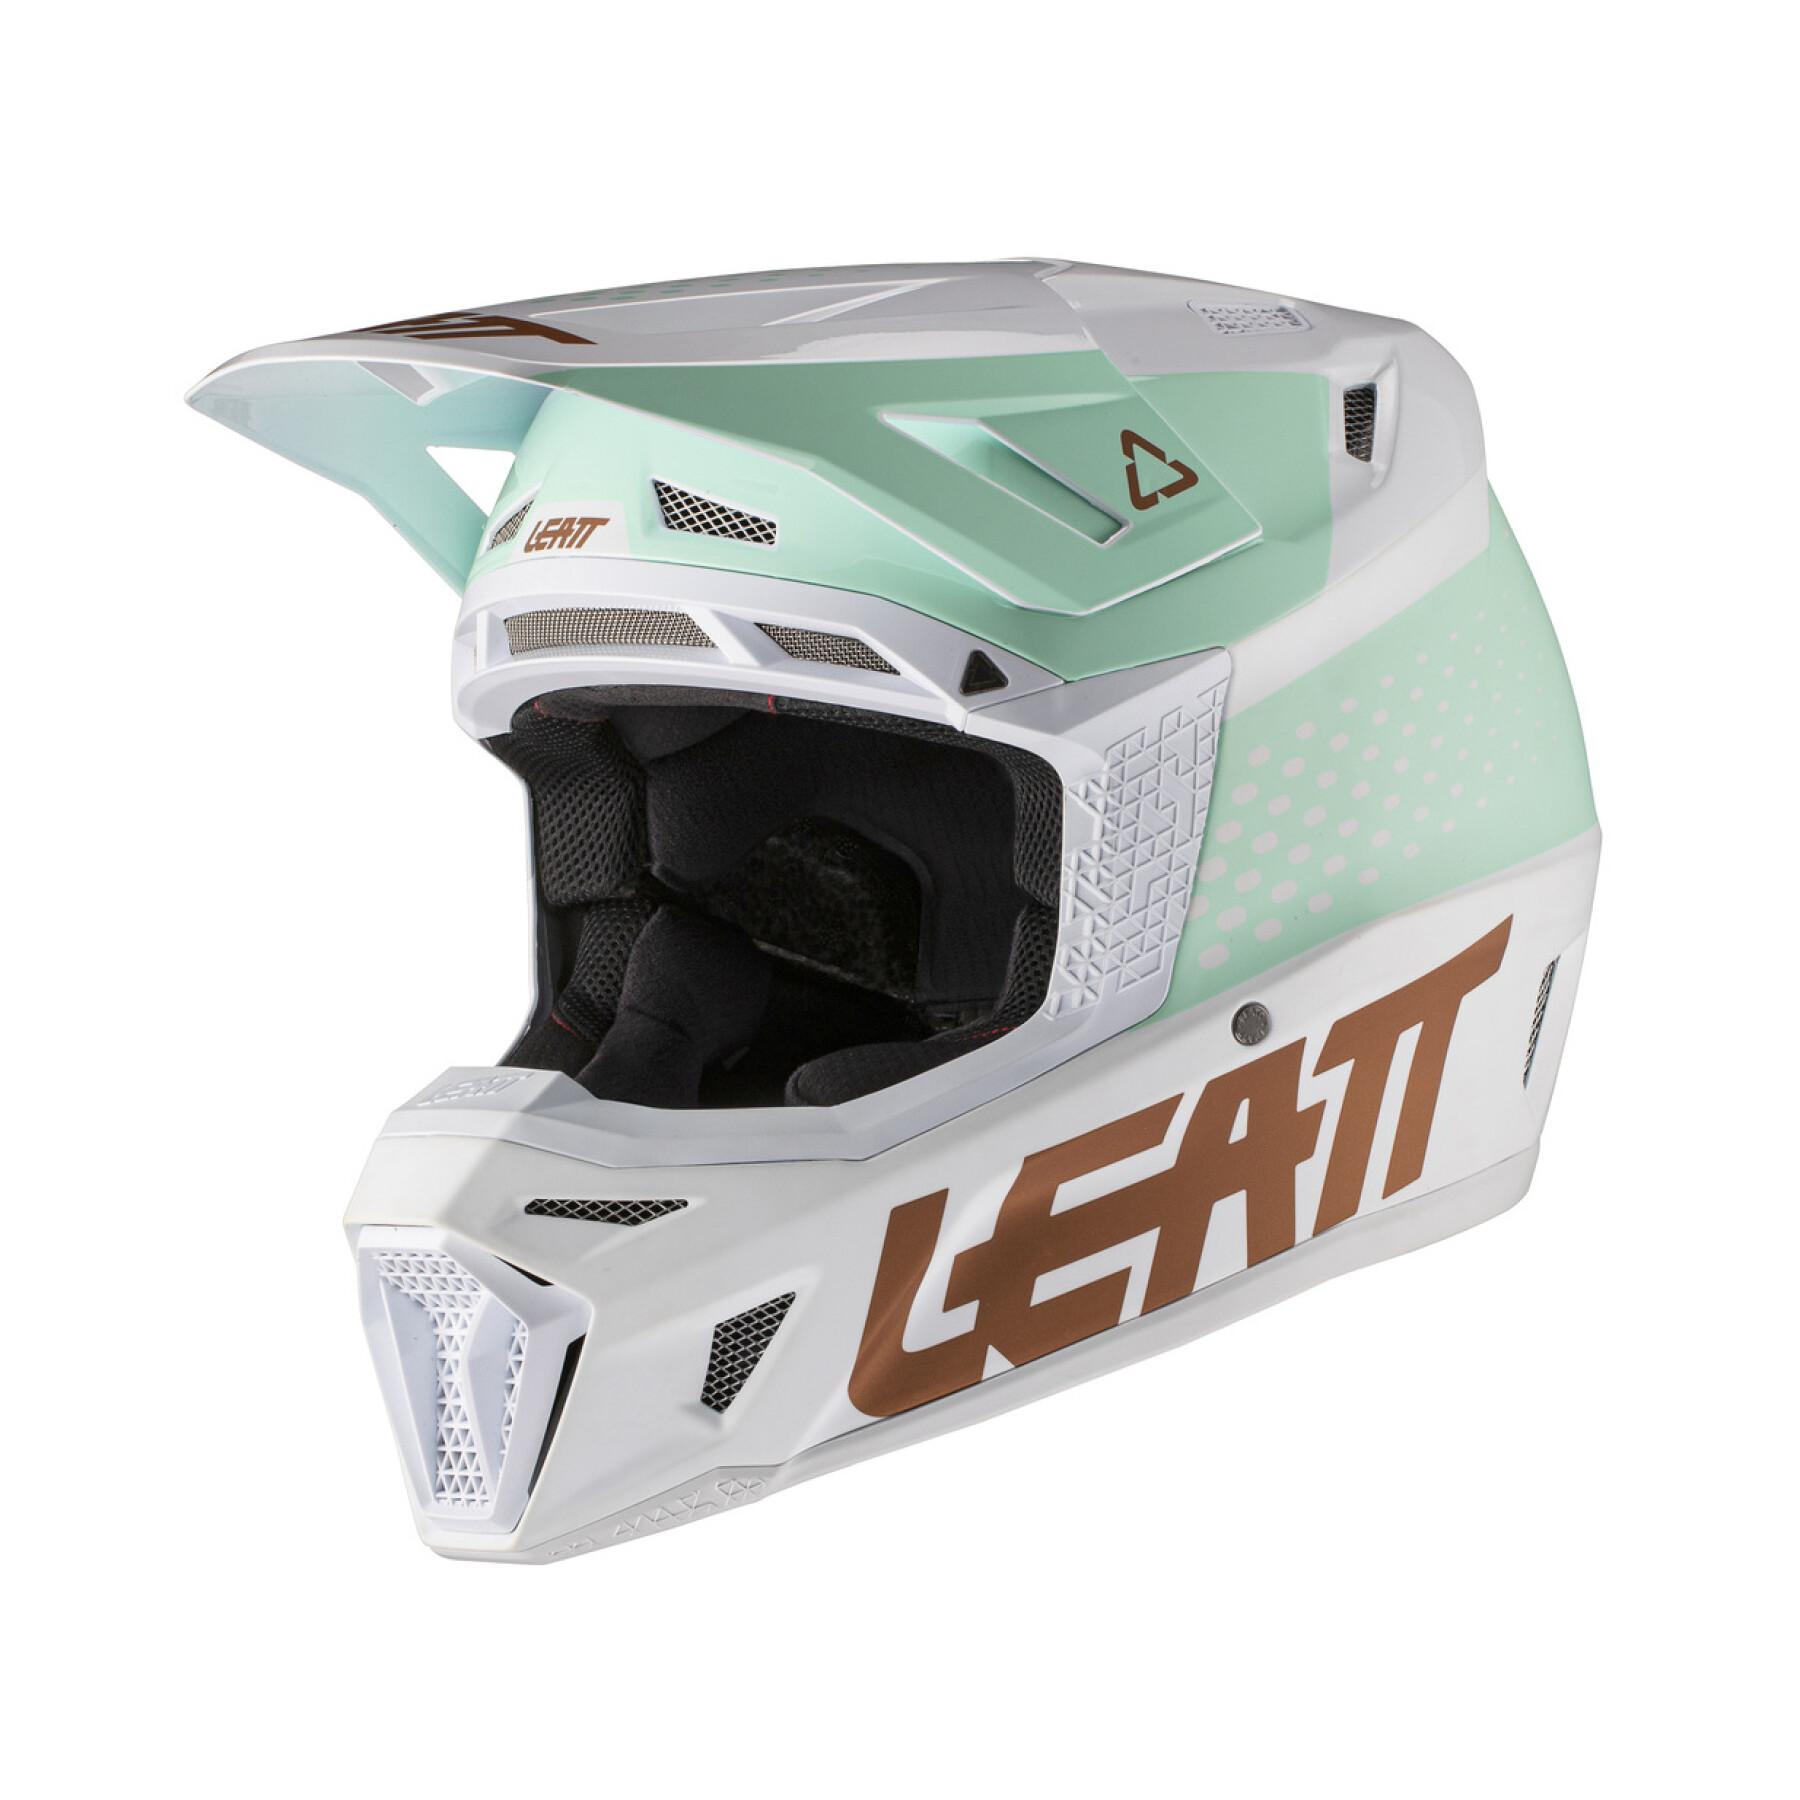 Motocrosshjälm inkl. skyddsglasögon Leatt 8.5 V21.1